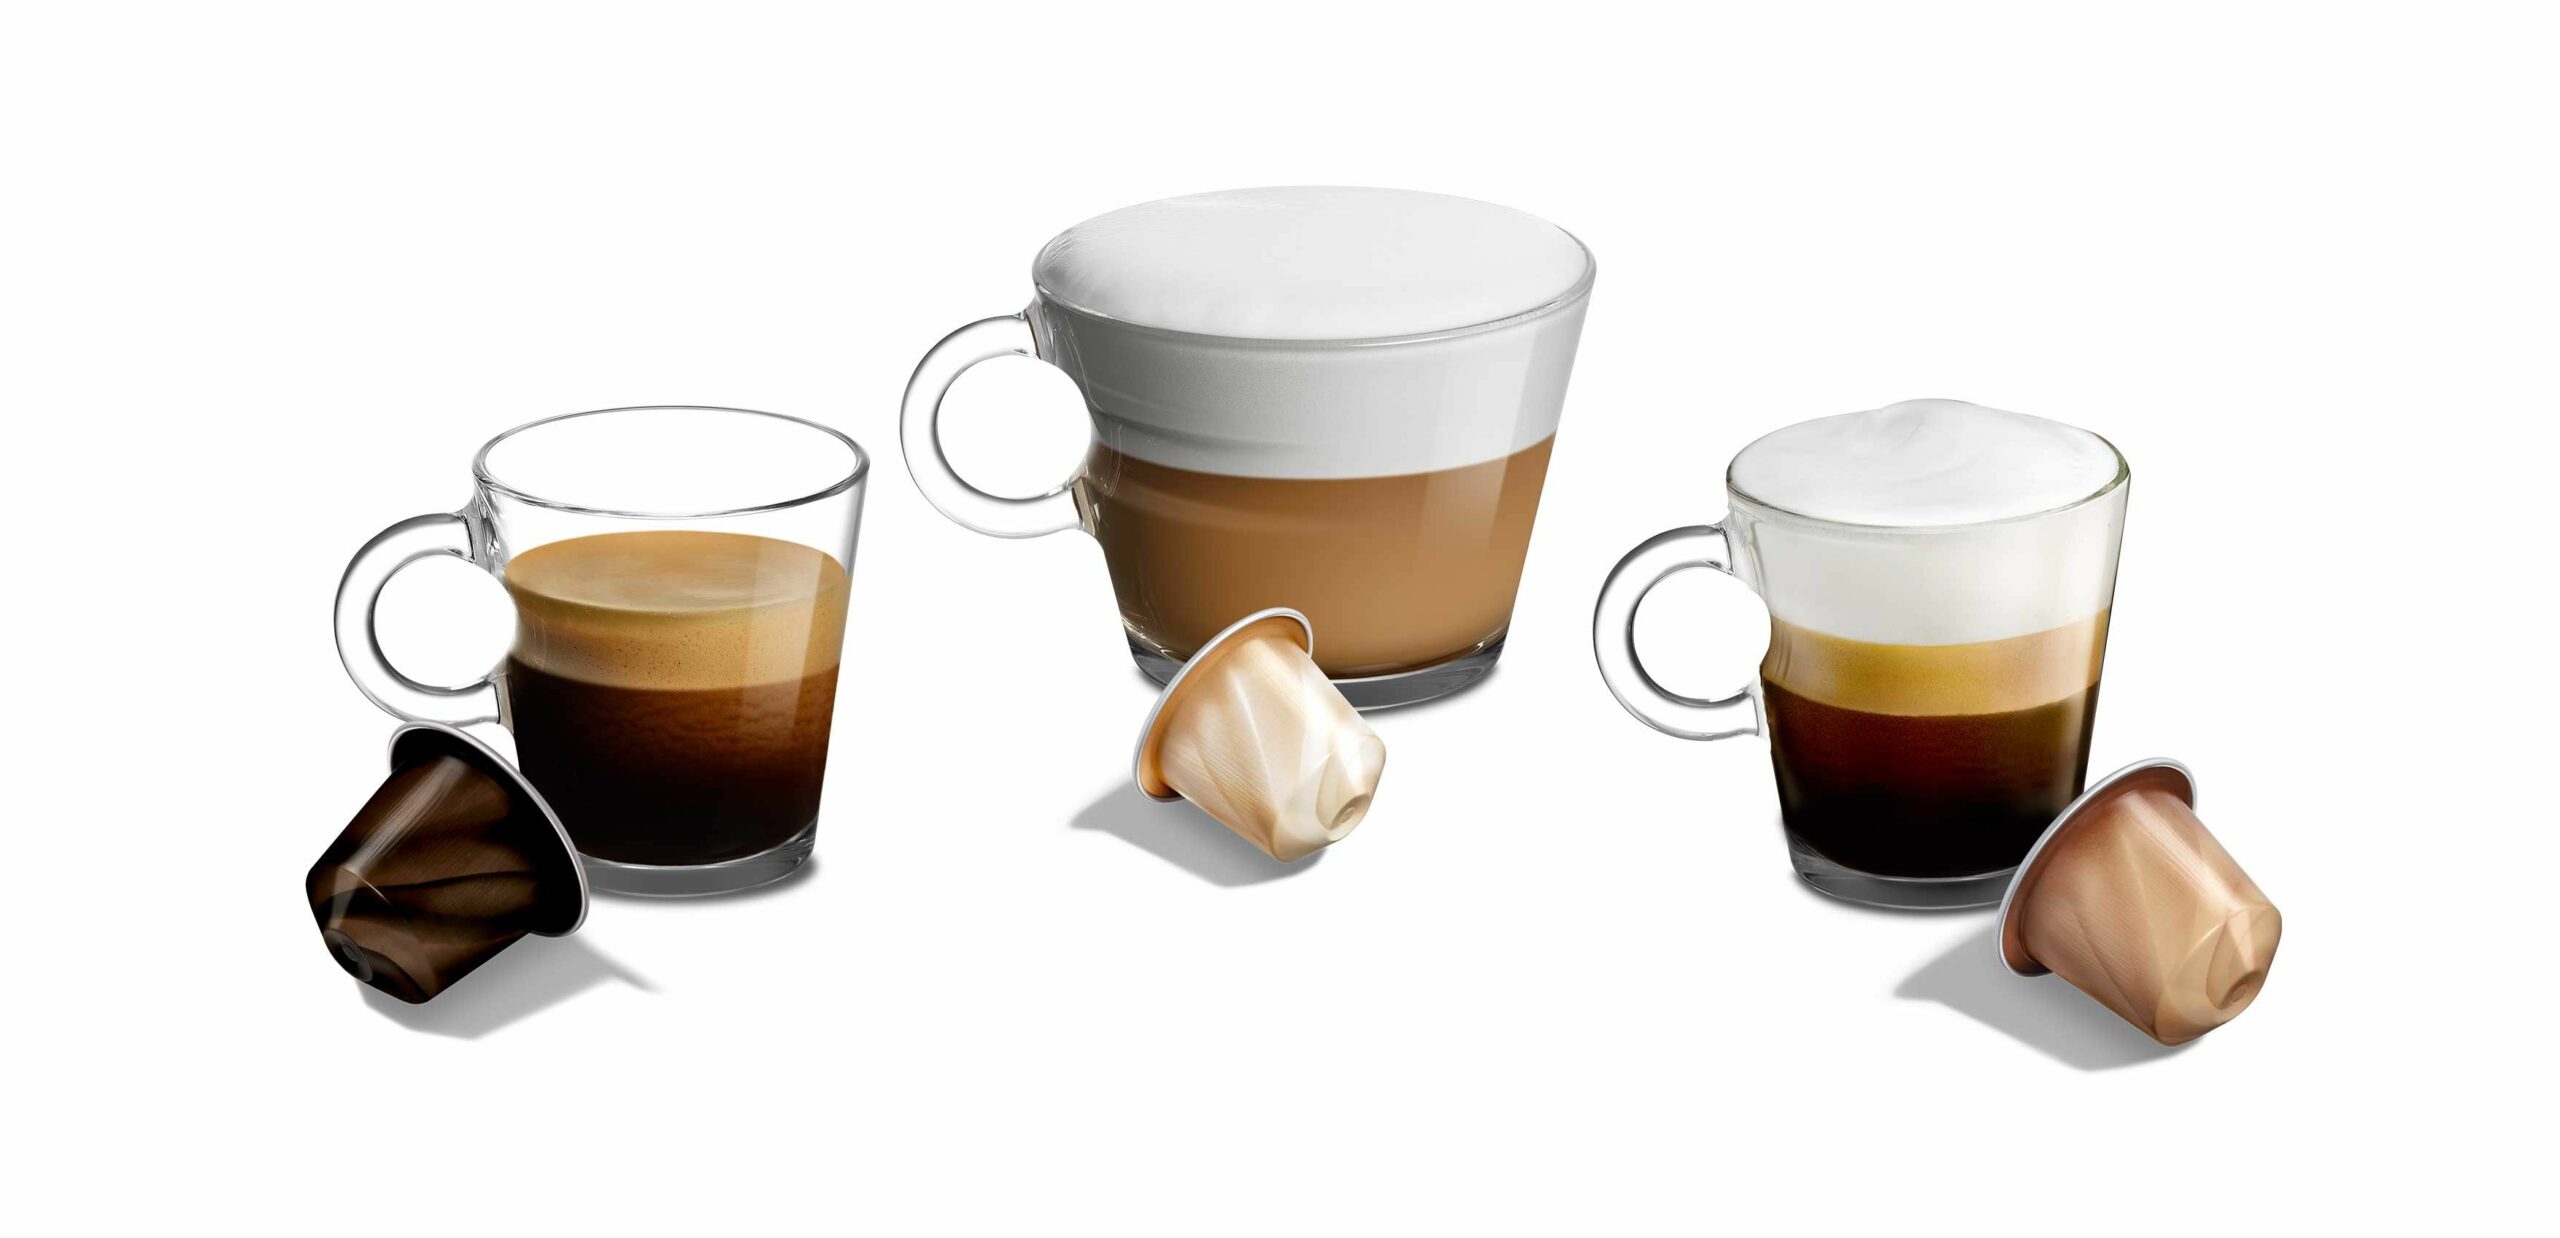 נספרסו משיקה מהדורת Barista מוגבלת של קפסולות קפה שהותאמו במיוחד ליצירת משקאות קפה ספציפיים